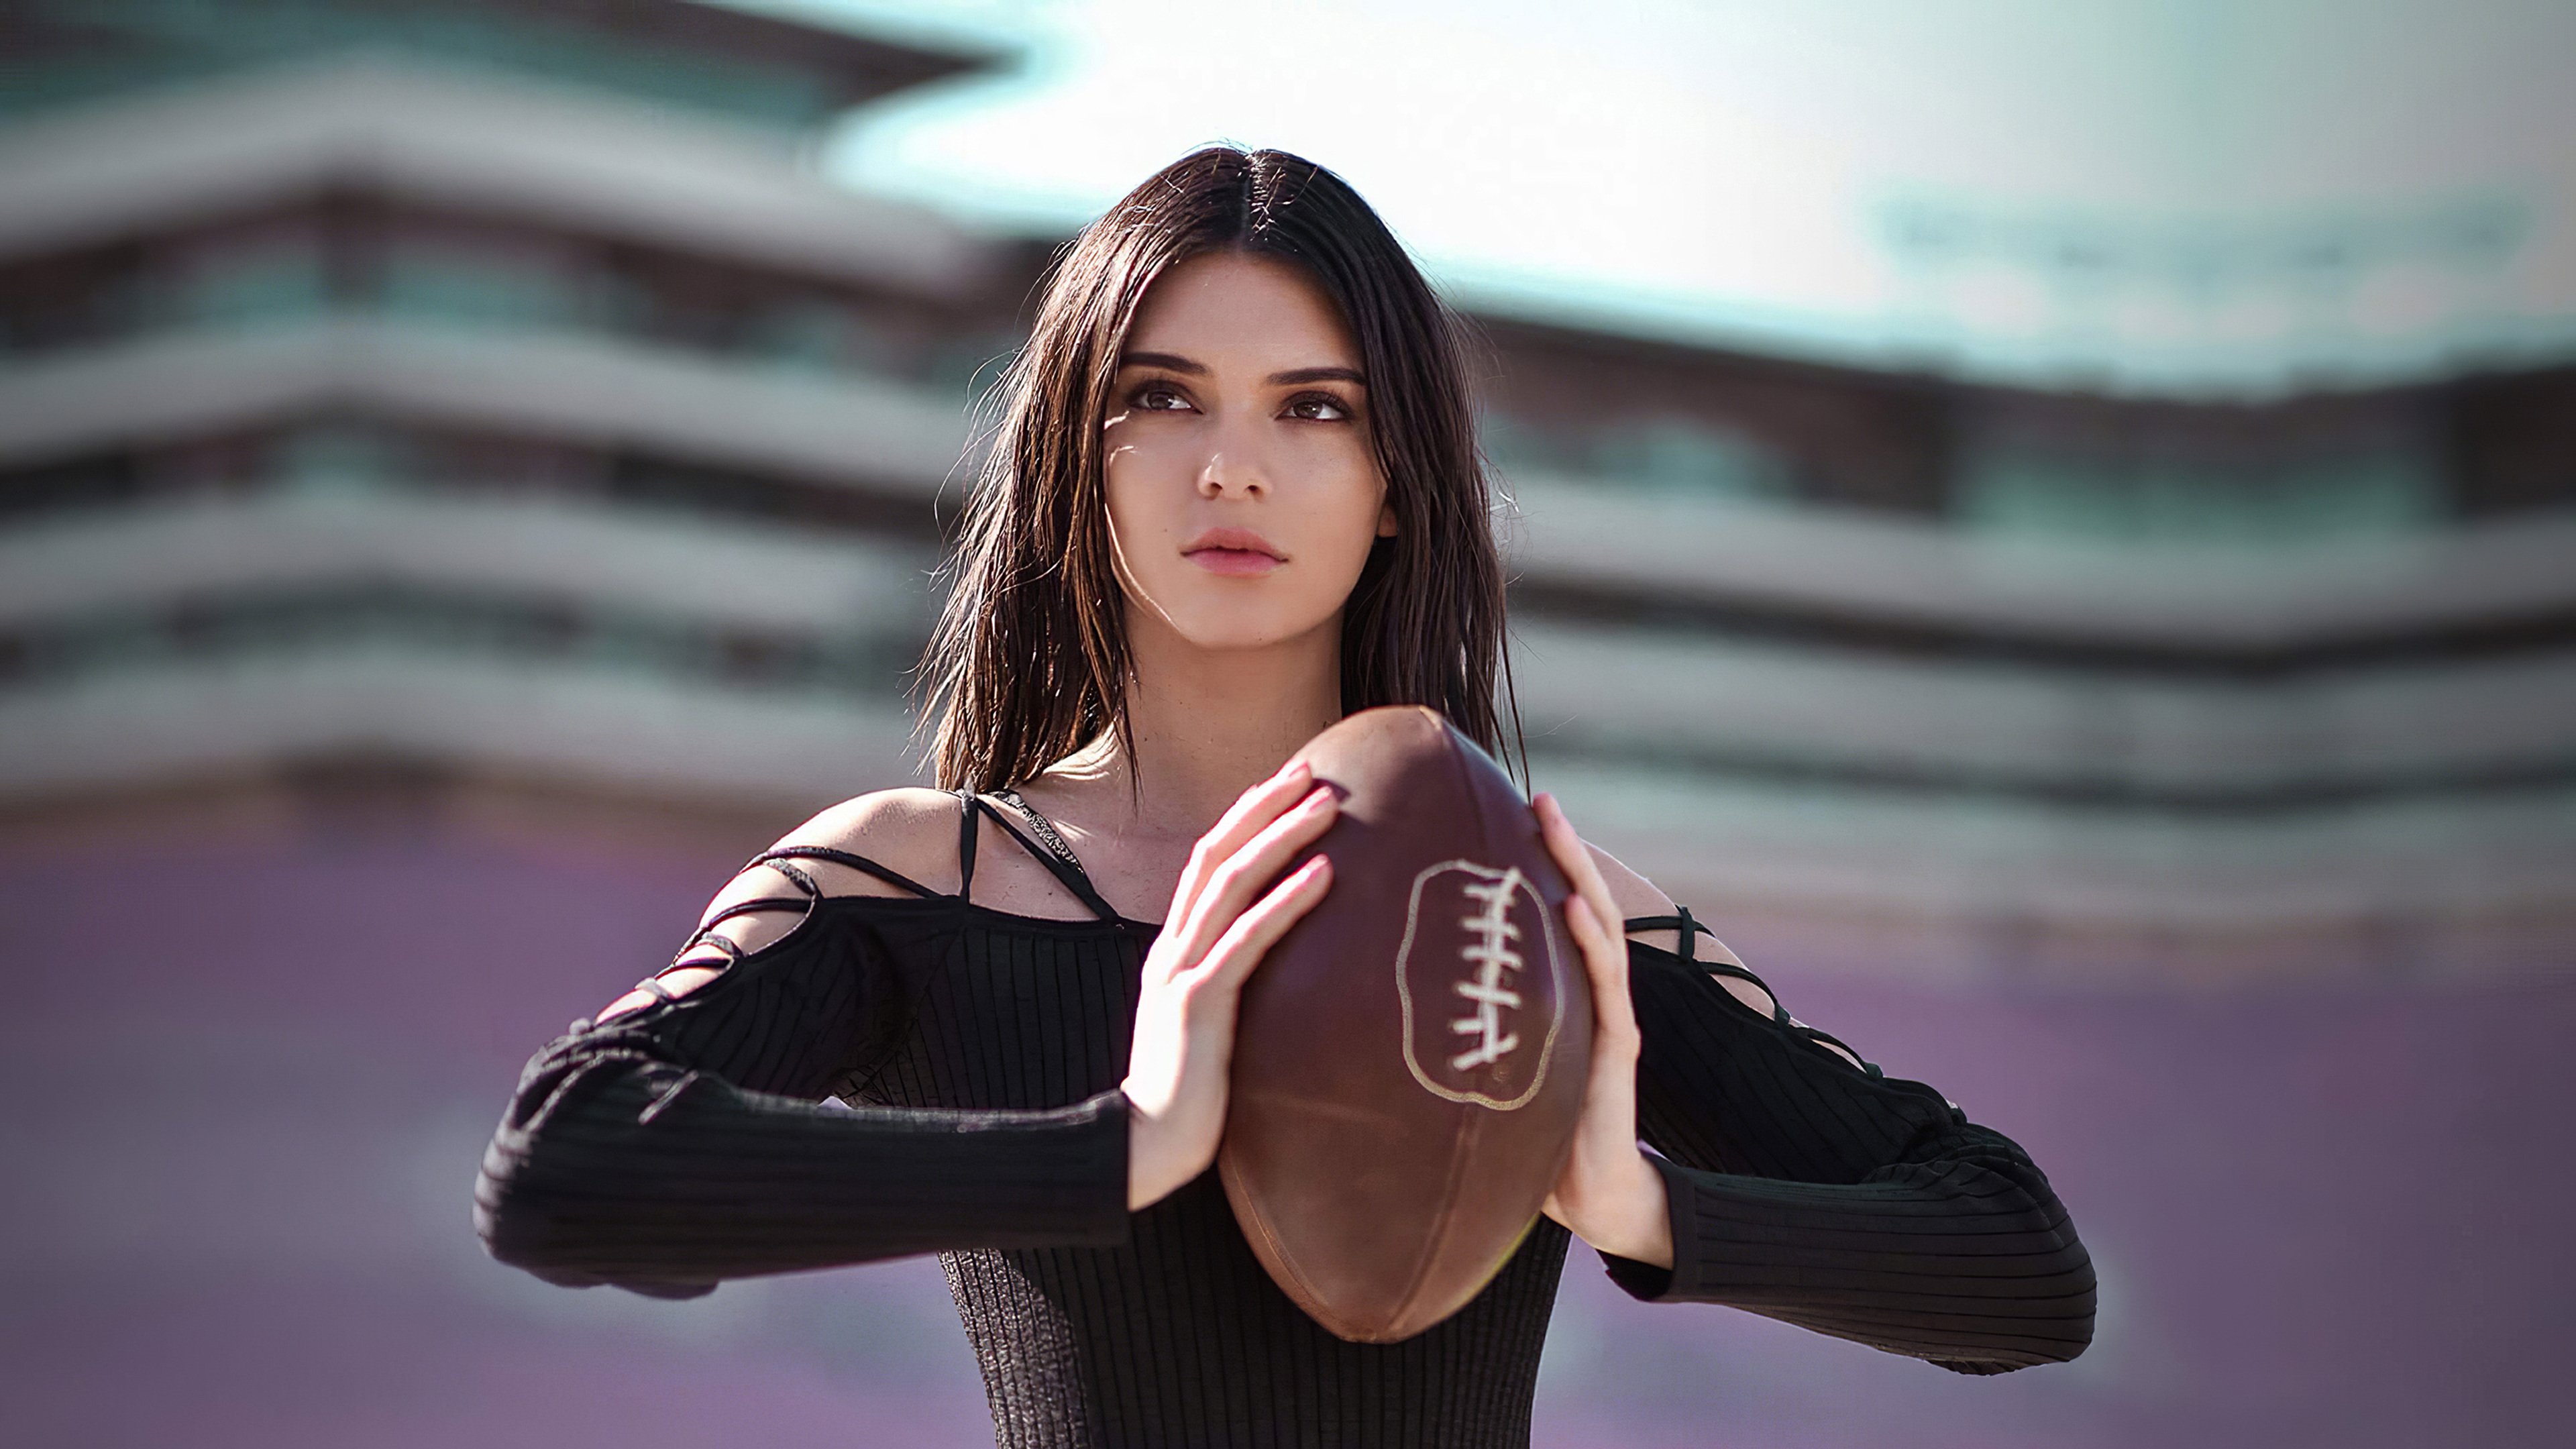 Fondos de pantalla Kendall Jenner con balon de futbol americano